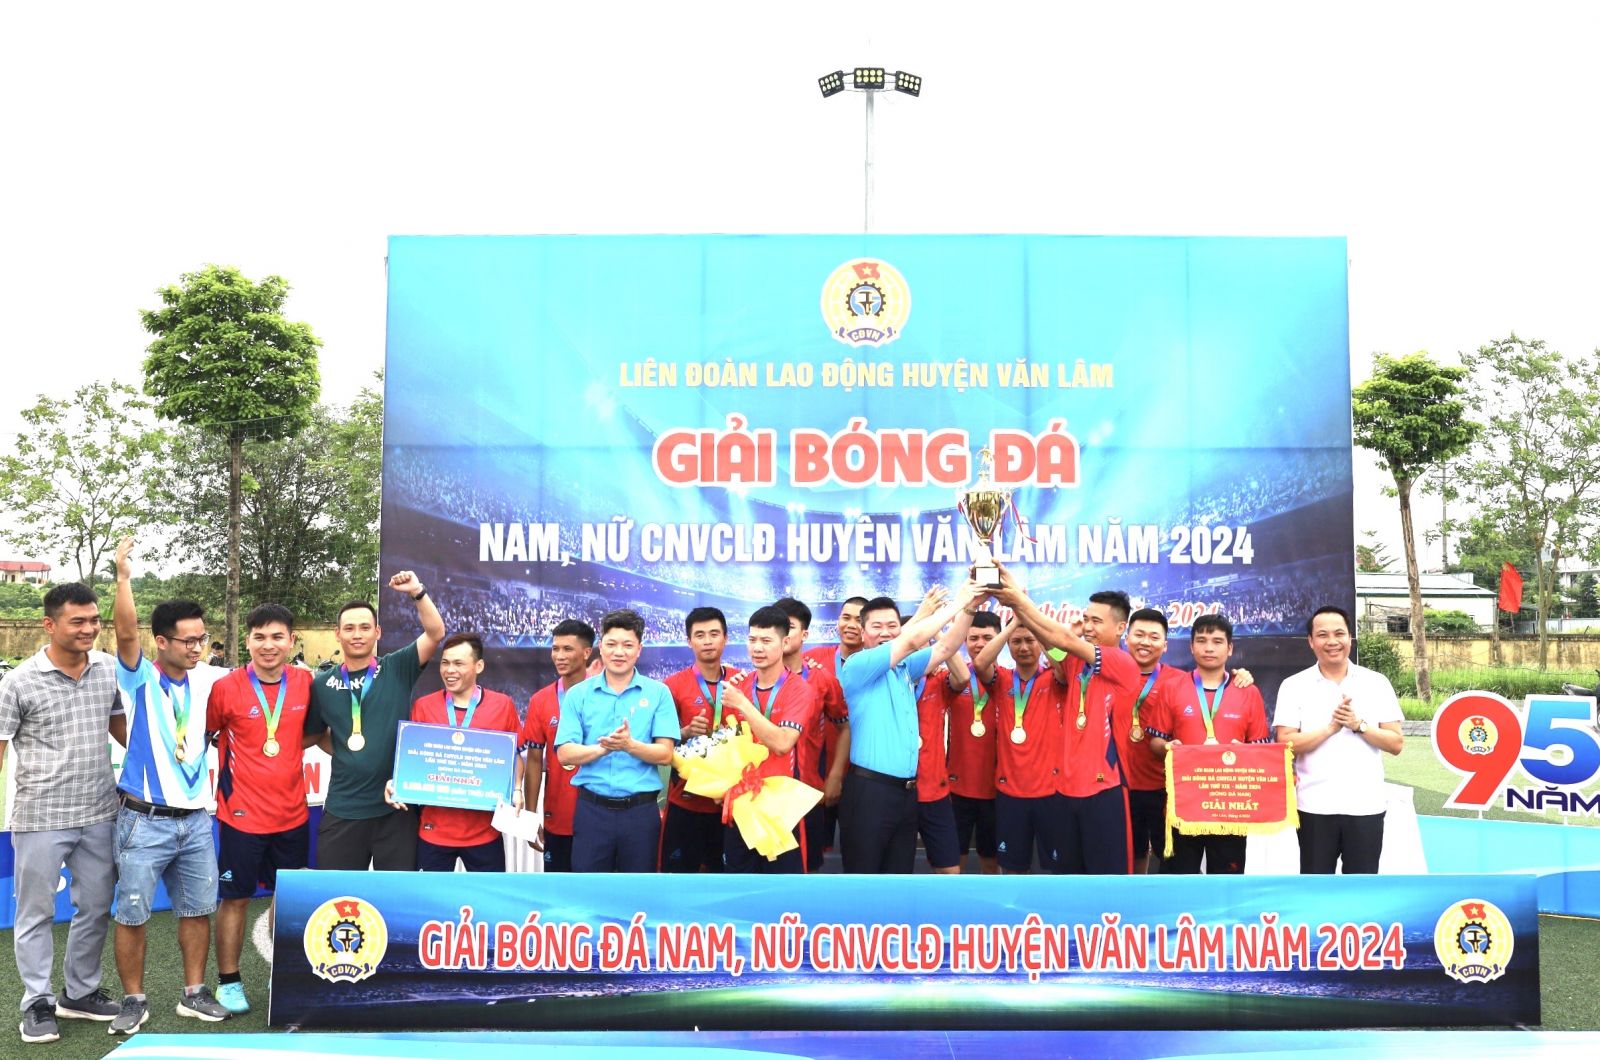 Liên đoàn Lao động huyện Văn Lâm tổ chức Chung kết và Bế mạc giải bóng đá nam, nữ CNVCLĐ huyện năm 2024